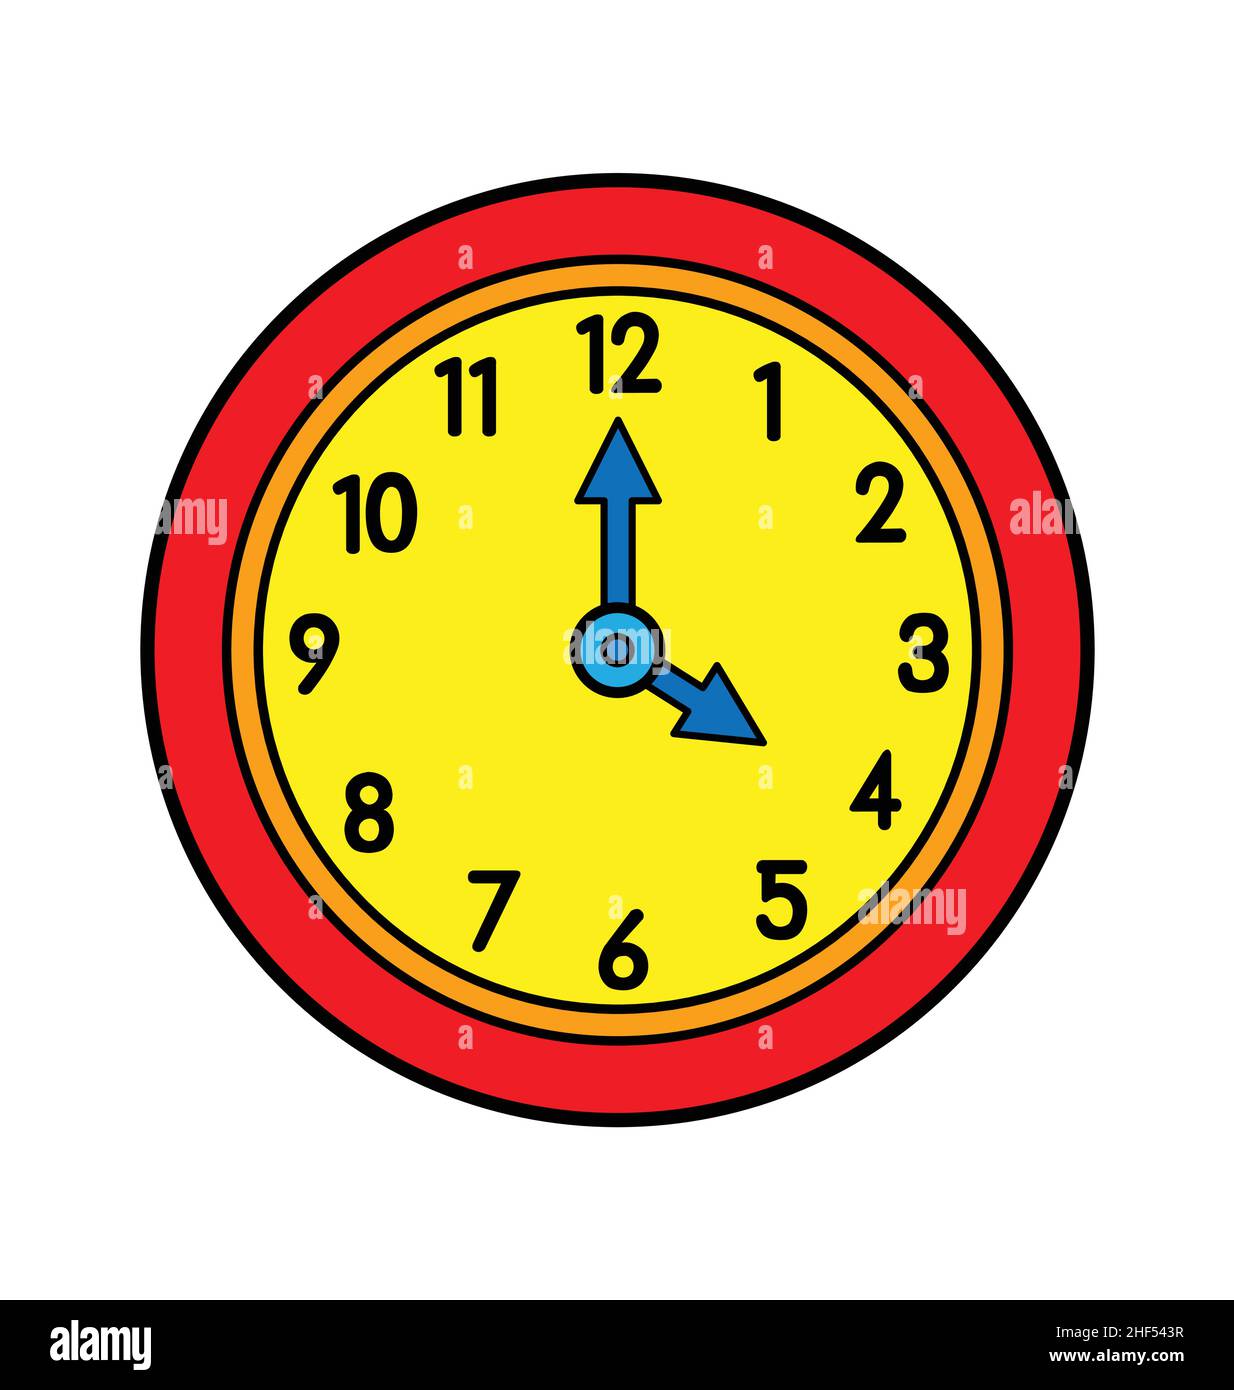 Ver La Hora Del Reloj De Dibujos Animados Icono De Trabajo Imagen Vector De  Stock Alamy | cvetexpress.rs